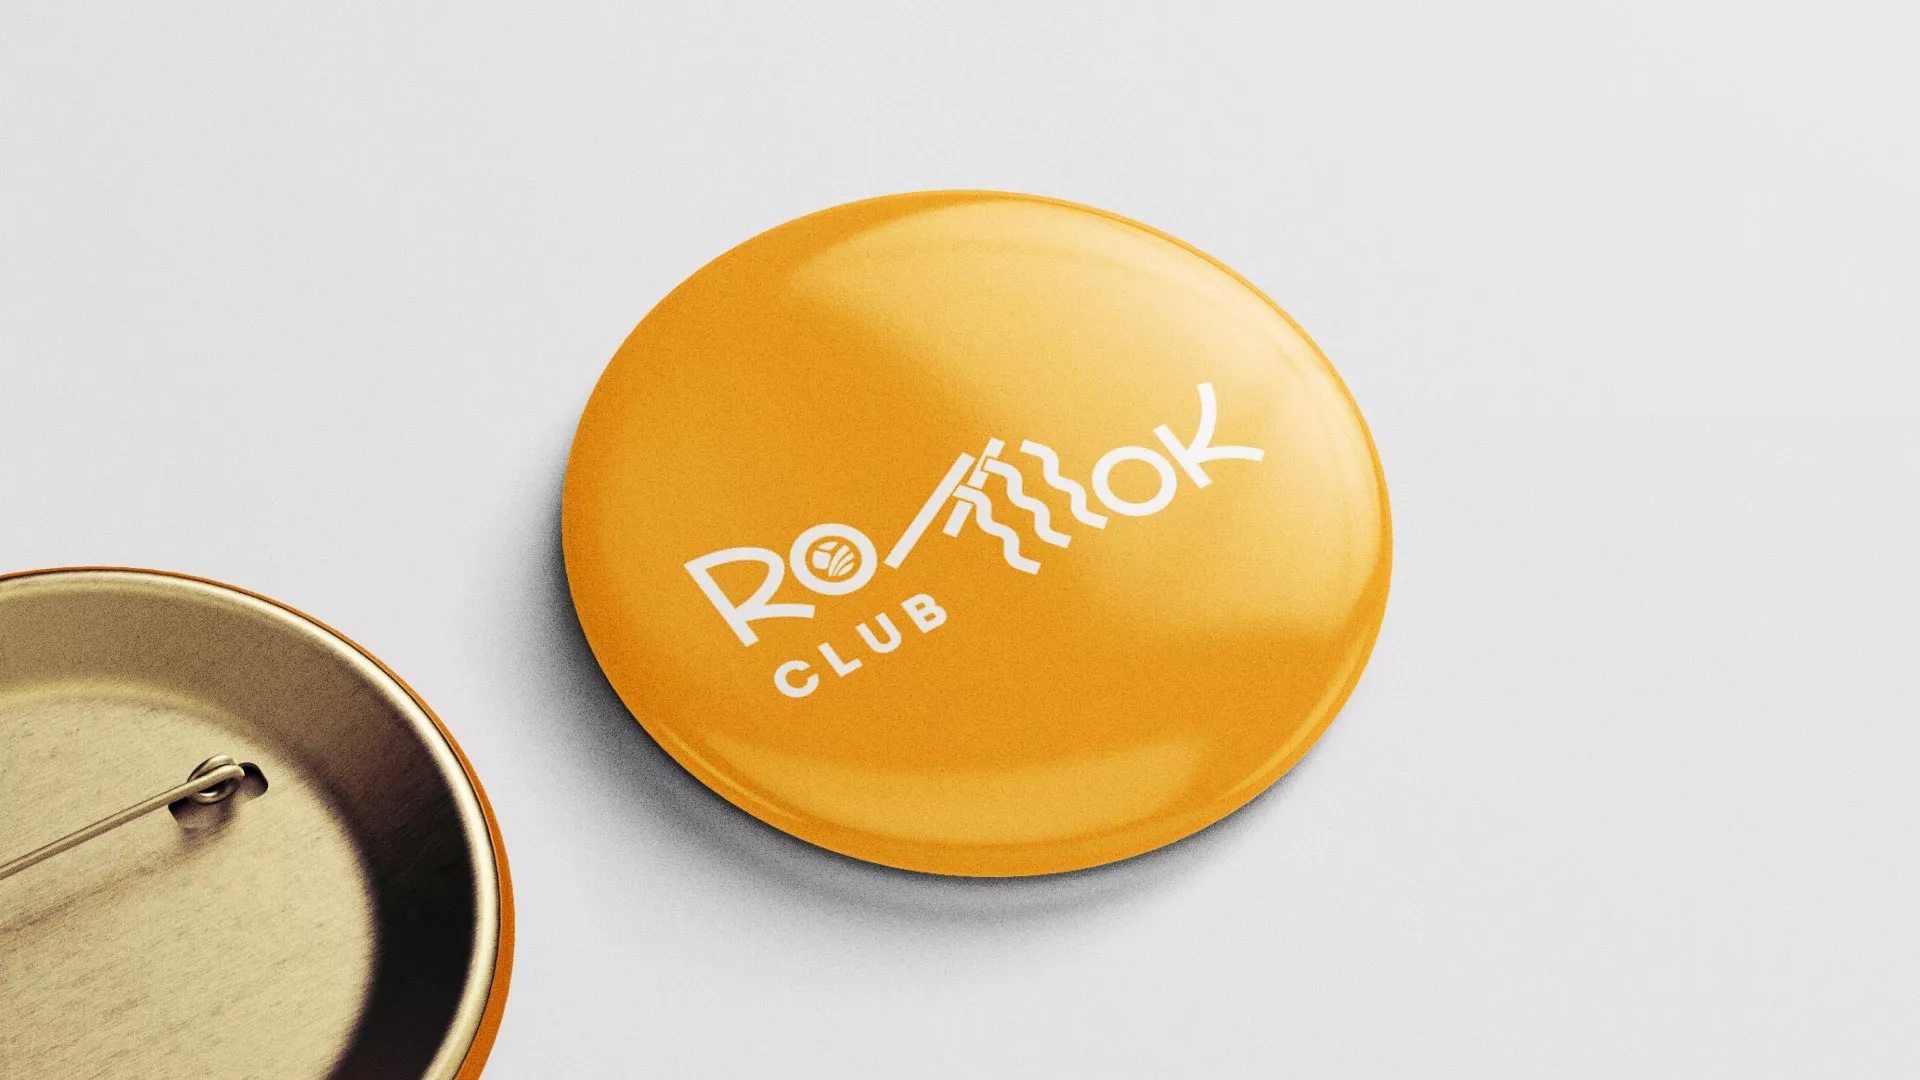 Создание логотипа суши-бара «Roll Wok Club» в Болотном